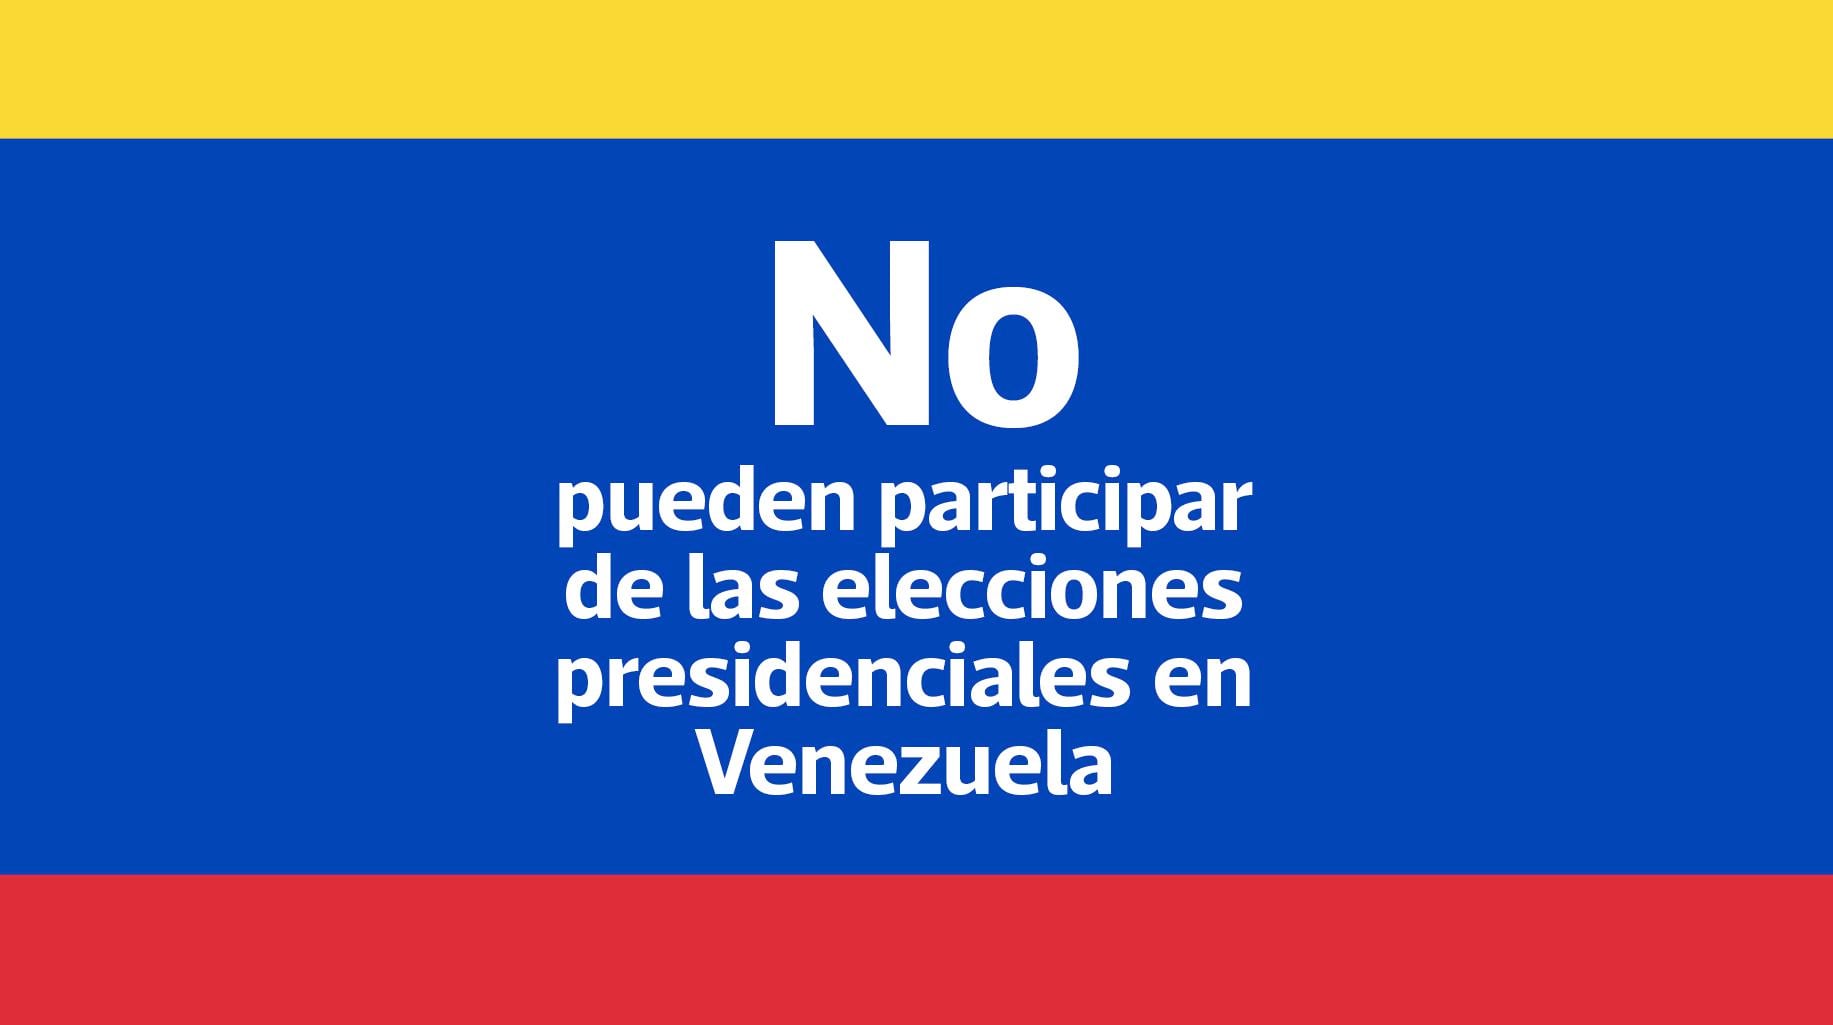 Los siguientes opositores no pueden participar en las elecciones presidenciales de Venezuela.